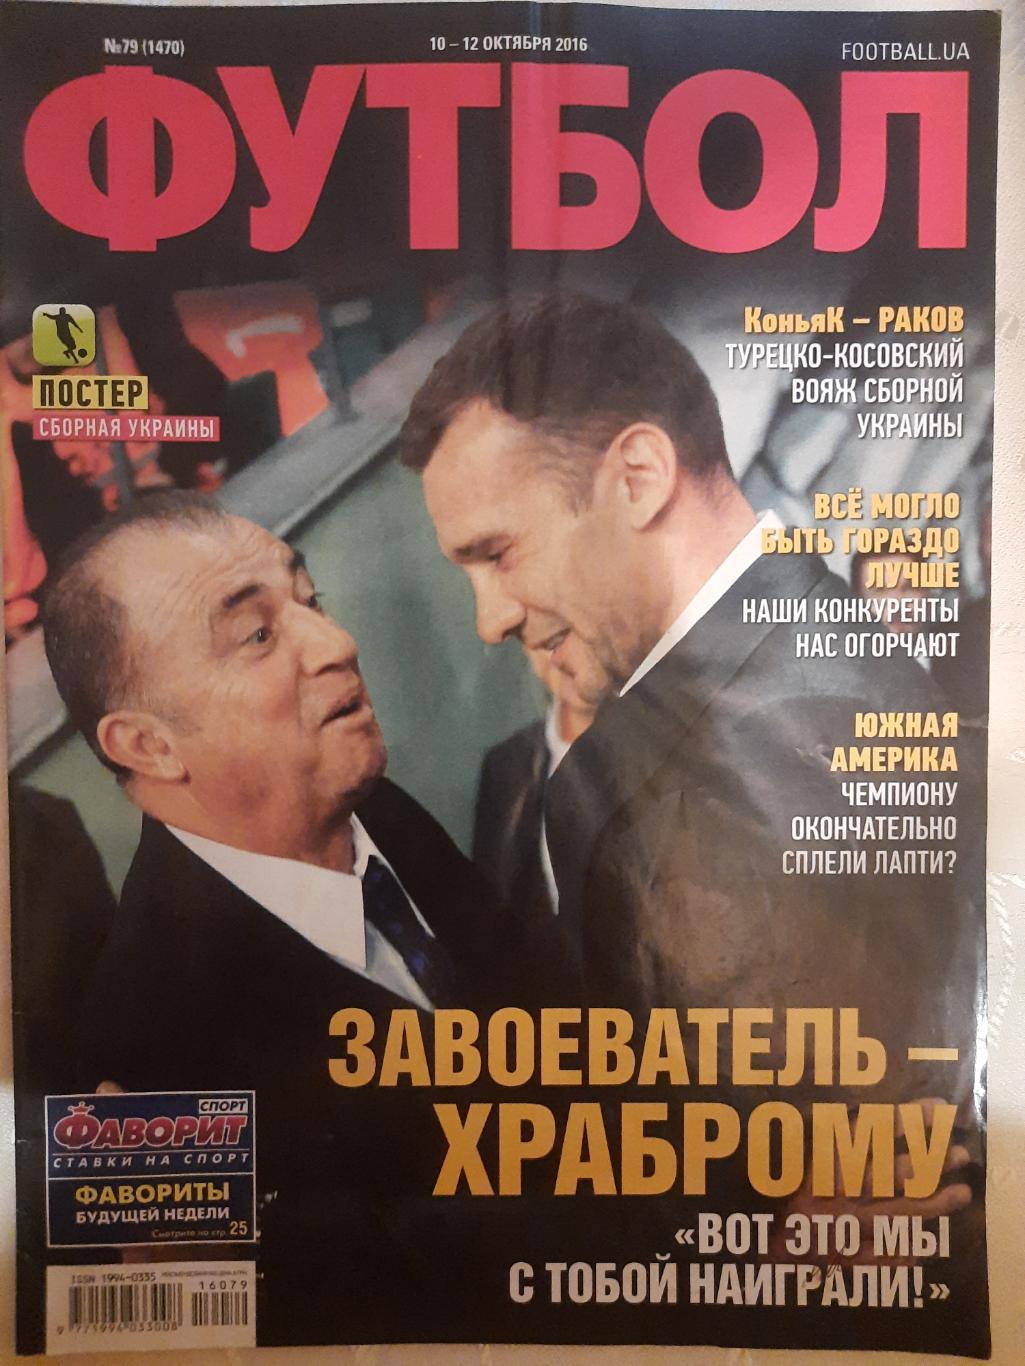 еженедельник Футбол #79 2016, постеры: сб.Украины, Мораес...